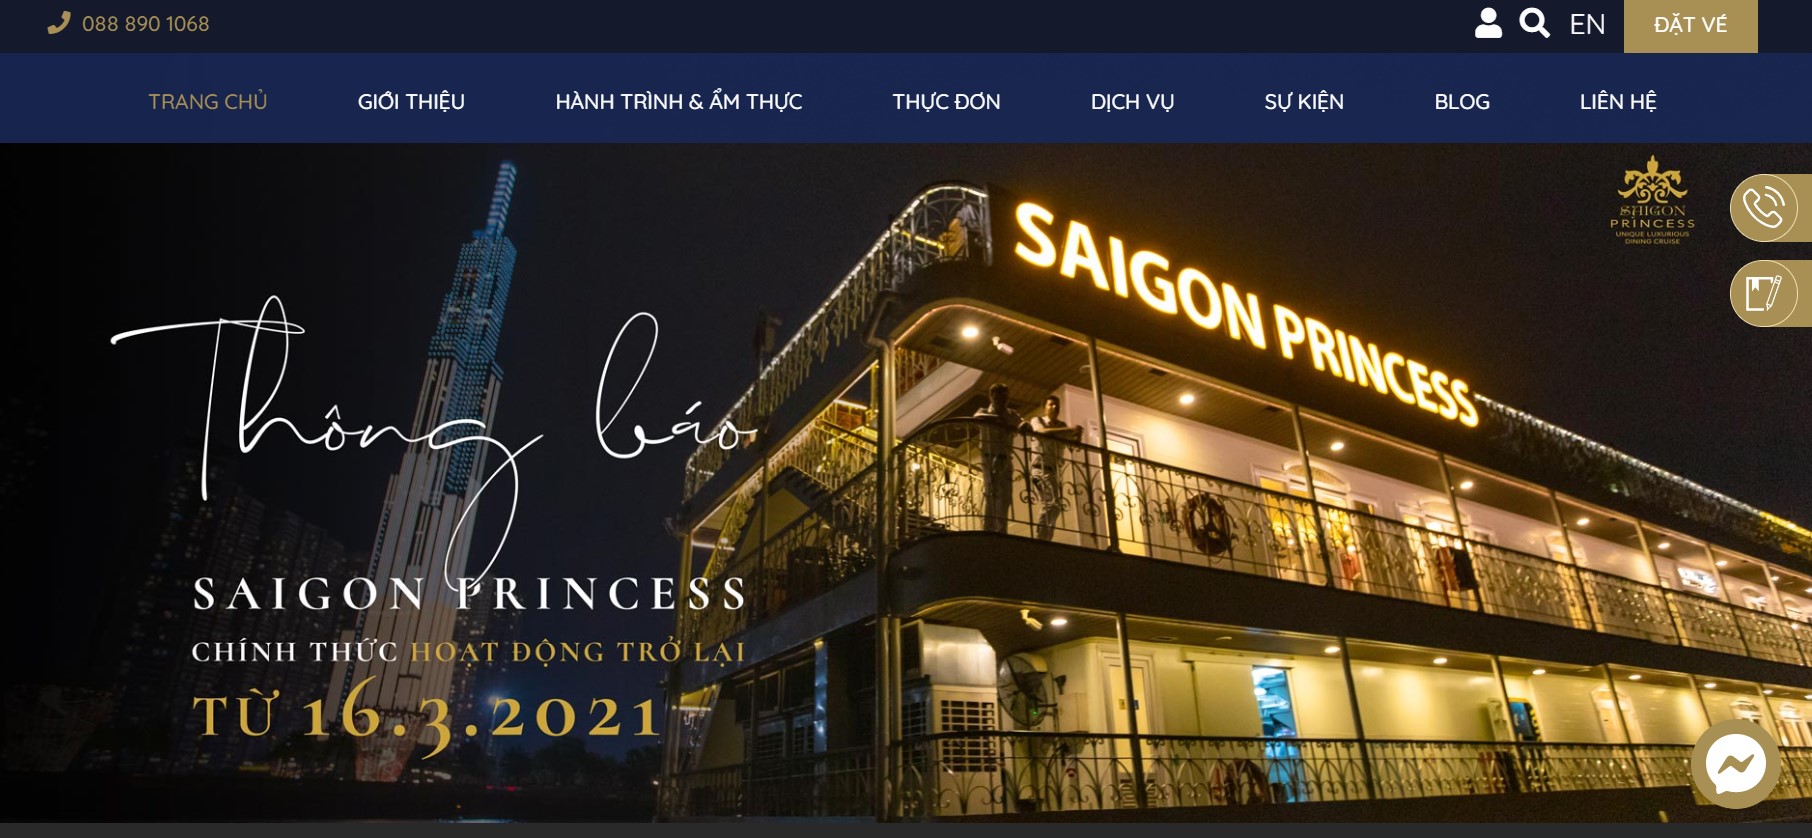 Du thuyền nhà hàng Saigon Princess